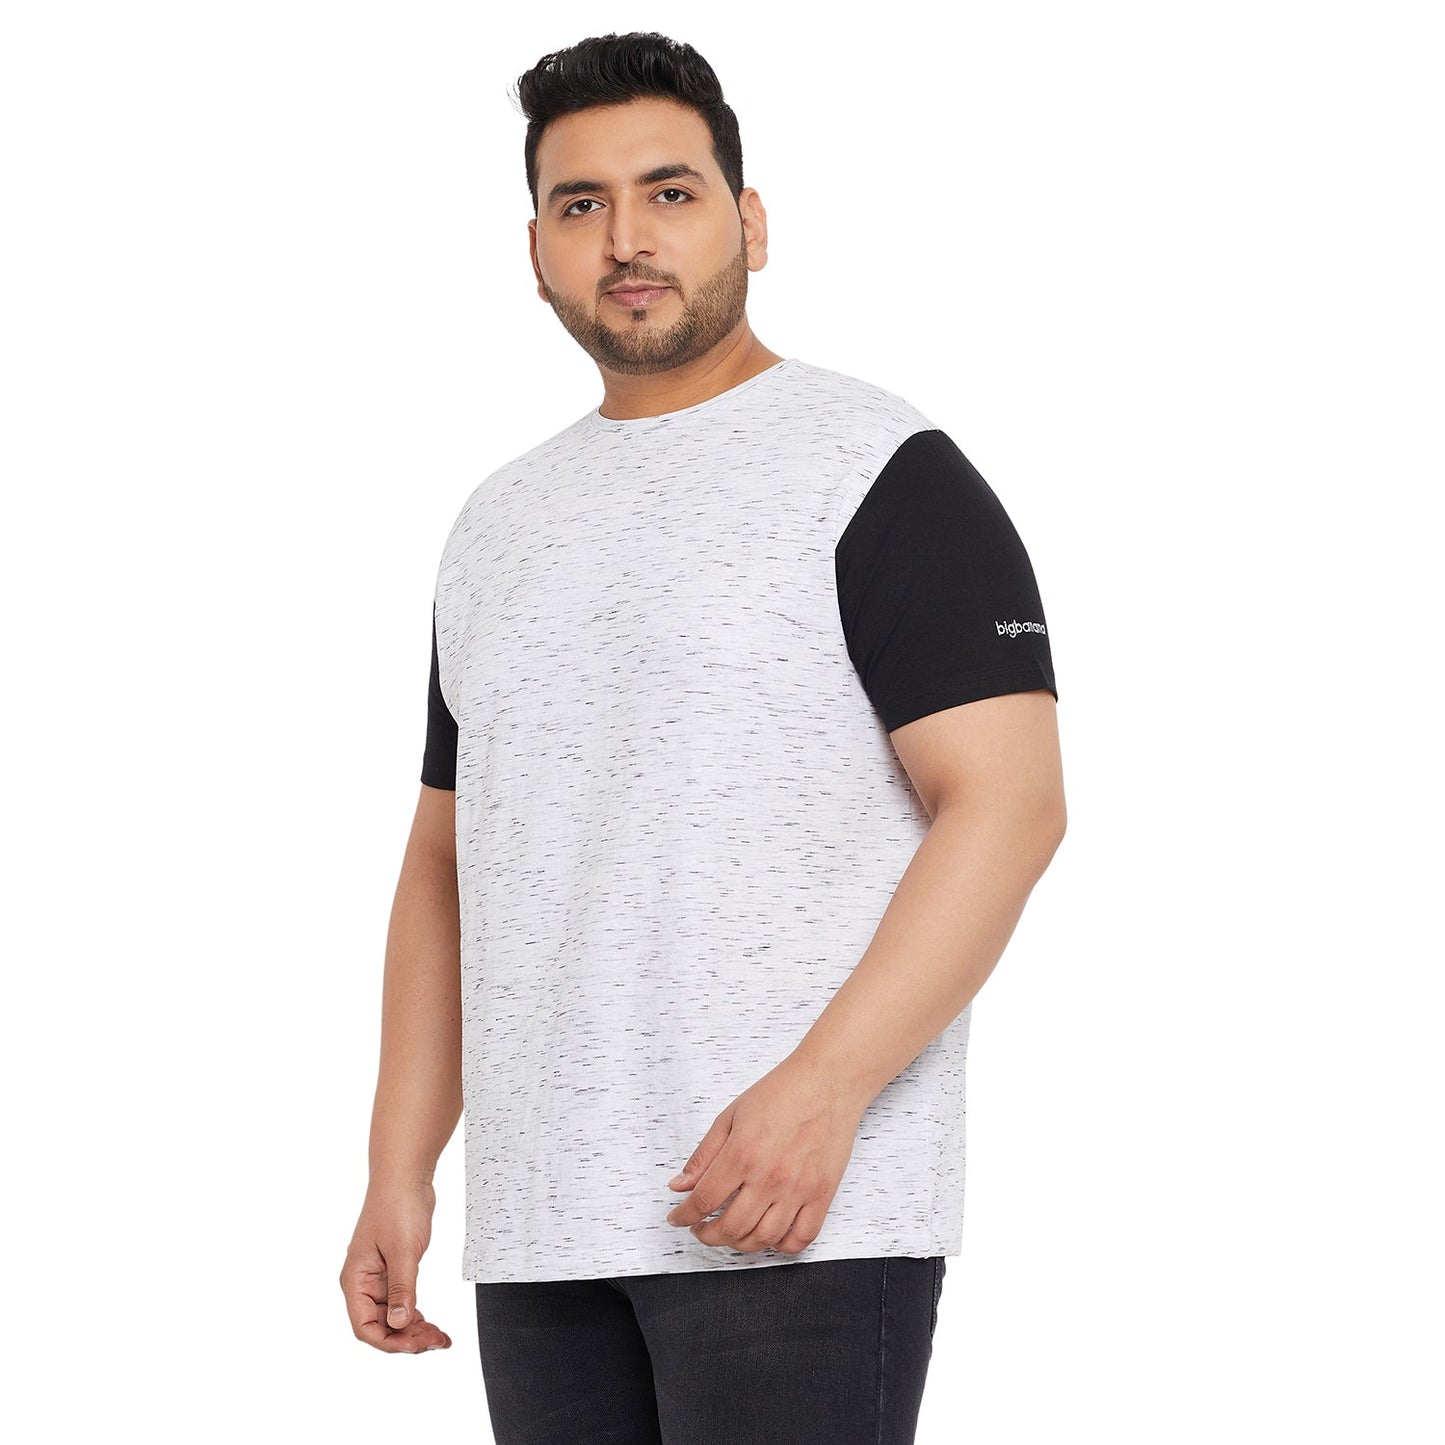 Men Plus Size Trey-White Self Design Round Neck Tshirt